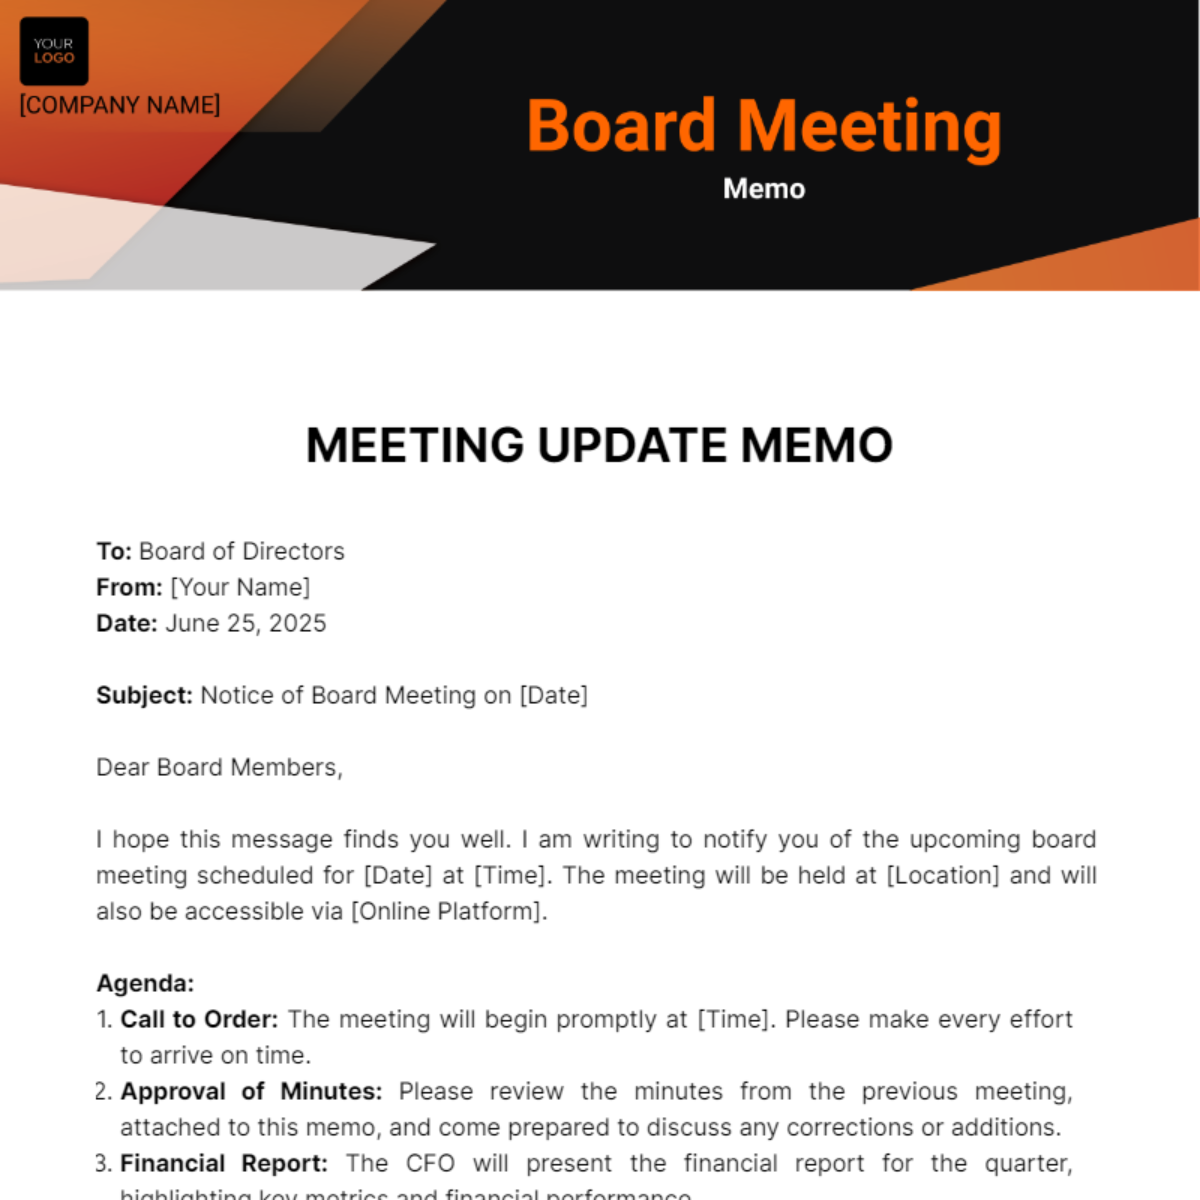 Board Meeting Memo Template